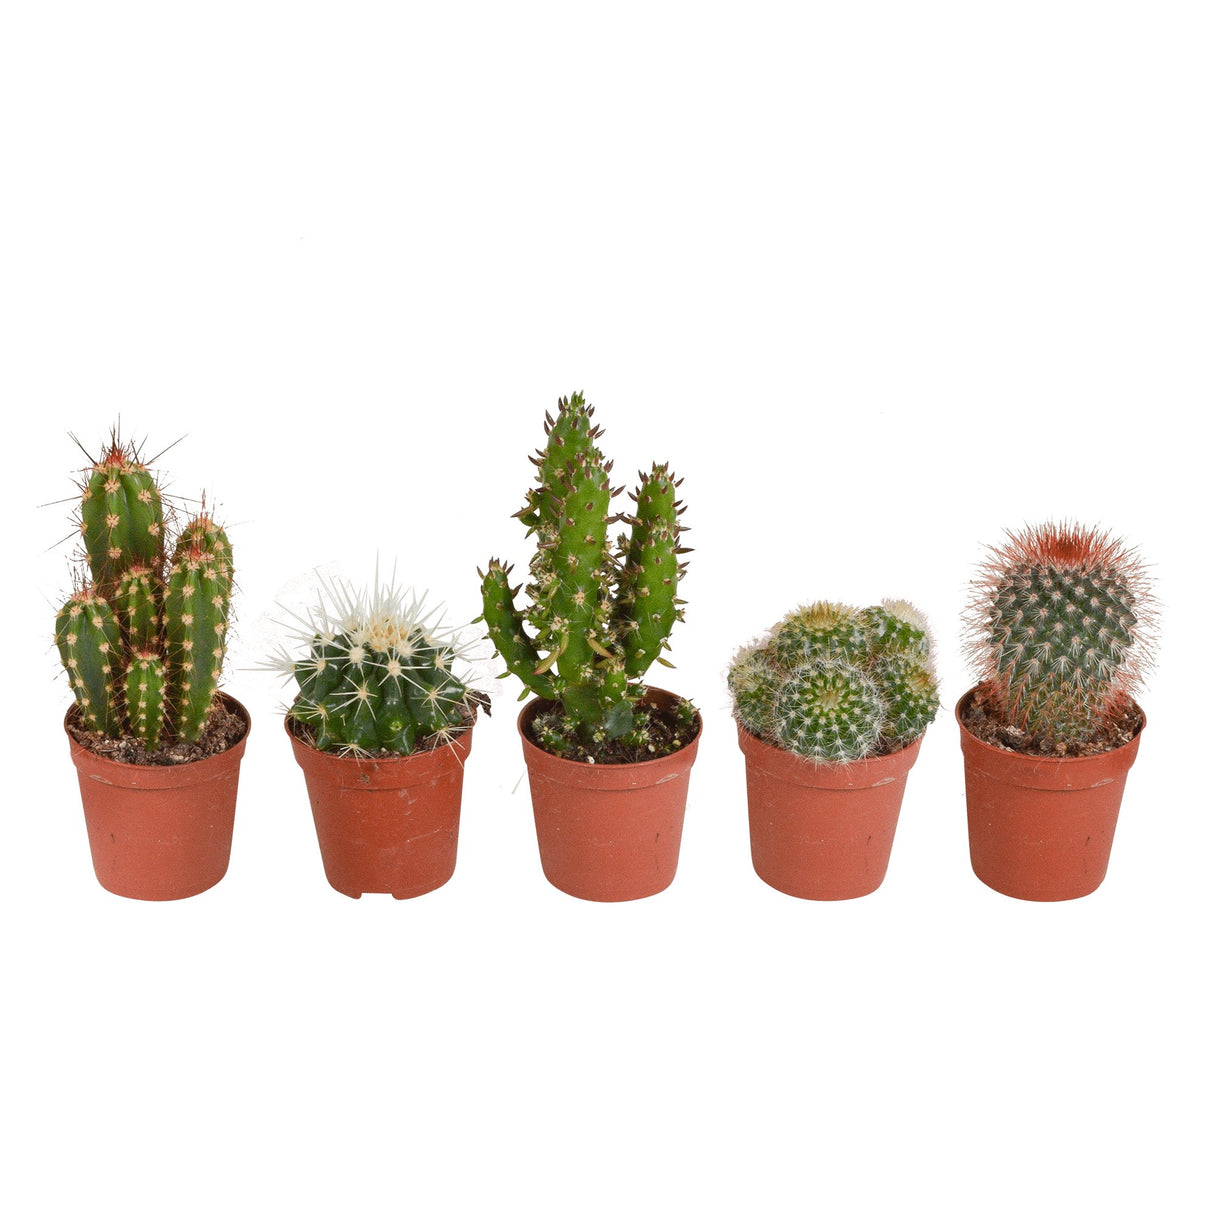 Livraison plante Coffret cactus - Lot de 5 plantes, h13cm